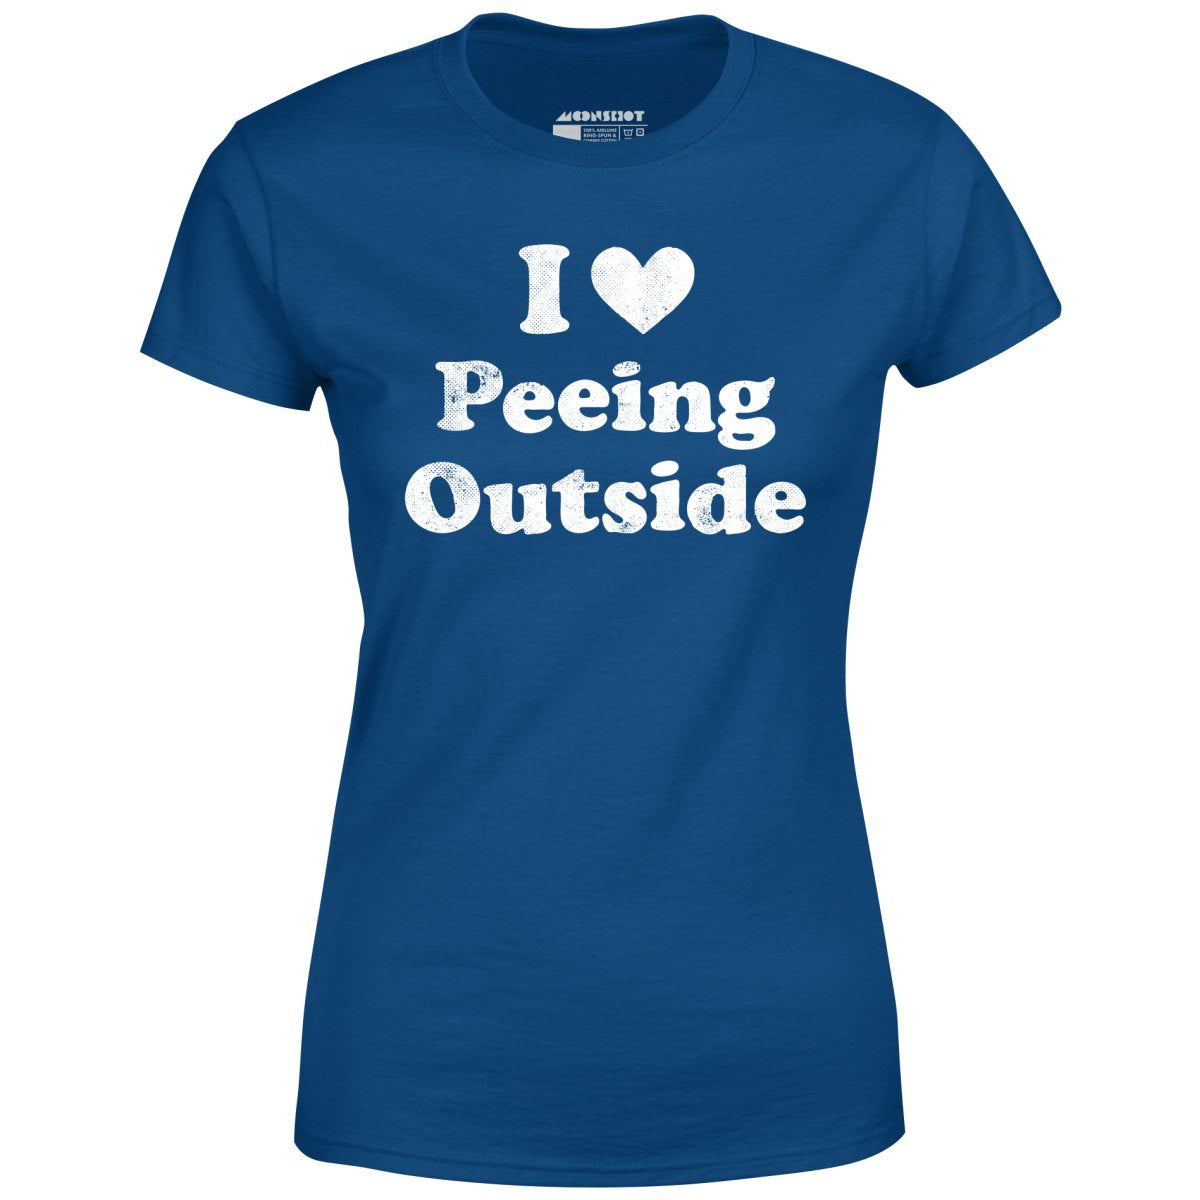 I Love Peeing Outside - Women's T-Shirt